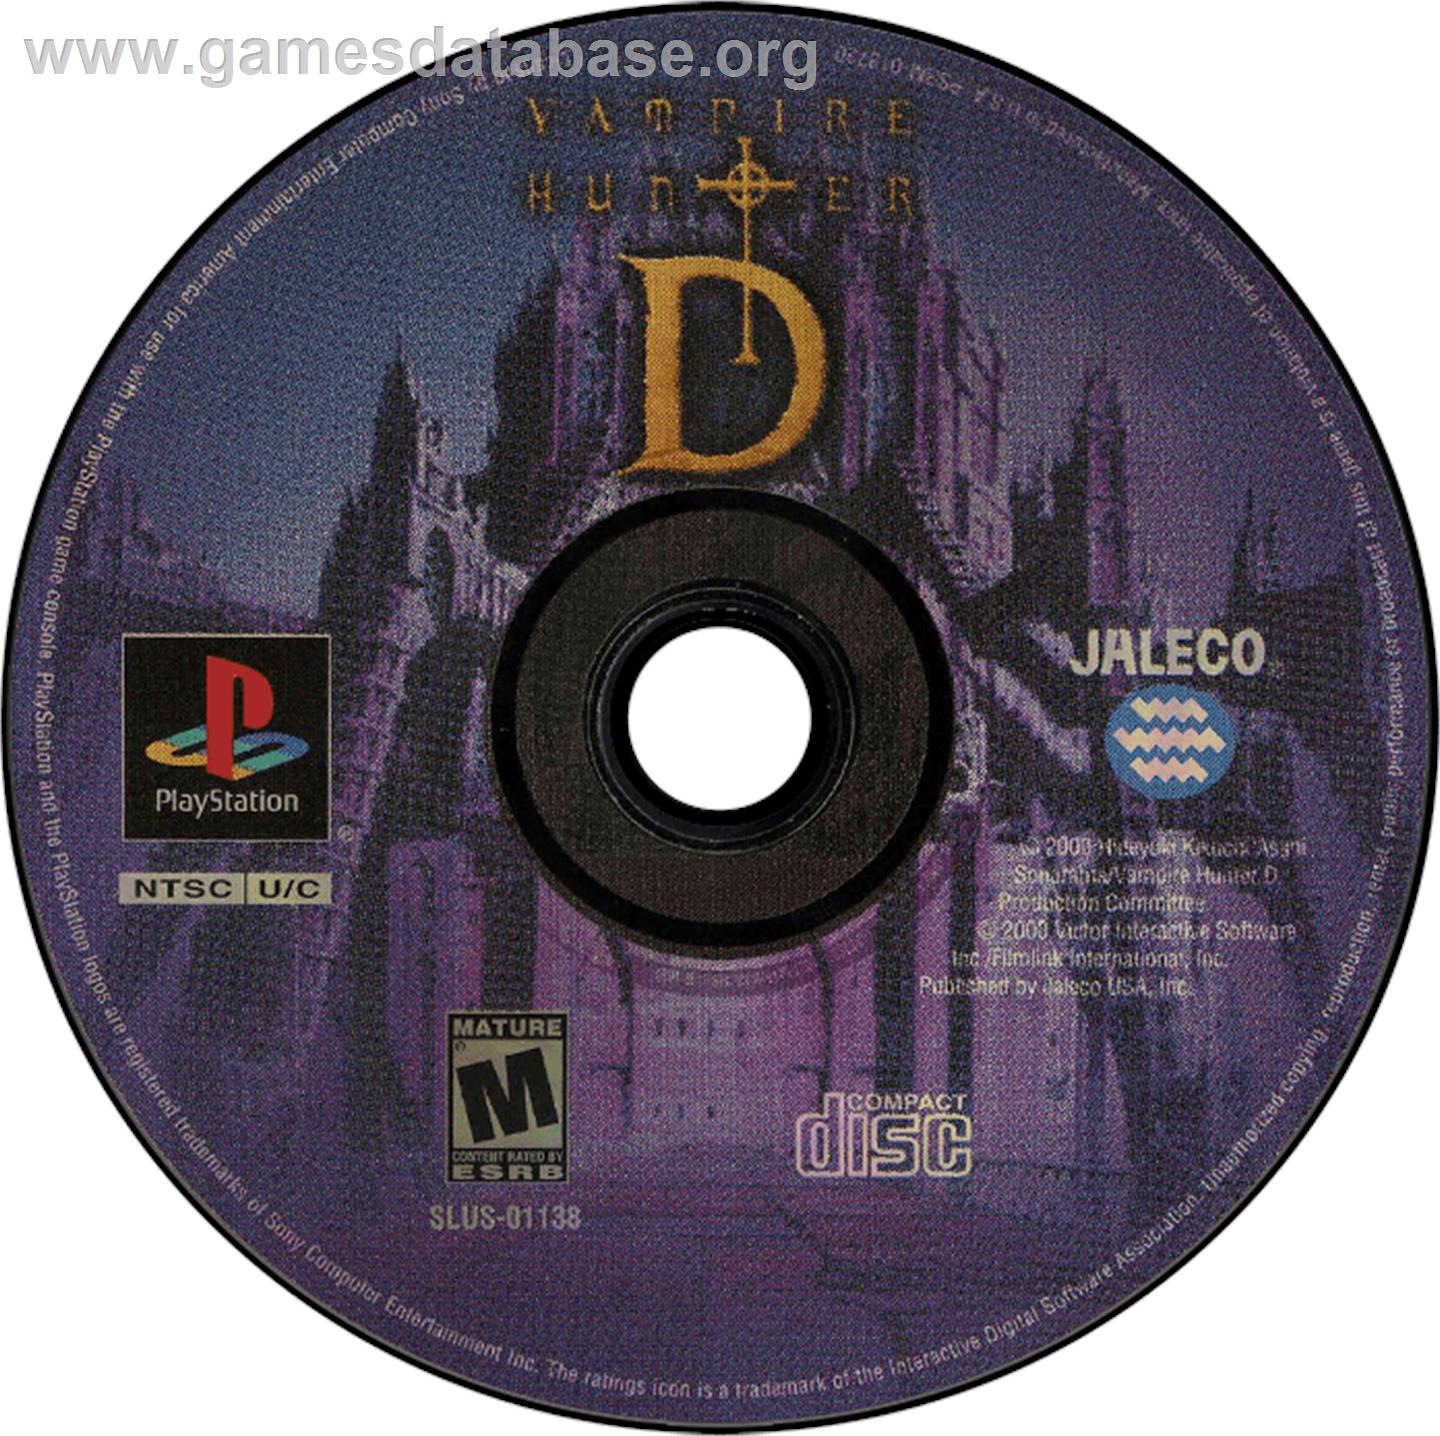 Vampire Hunter D - Sony Playstation - Artwork - Disc